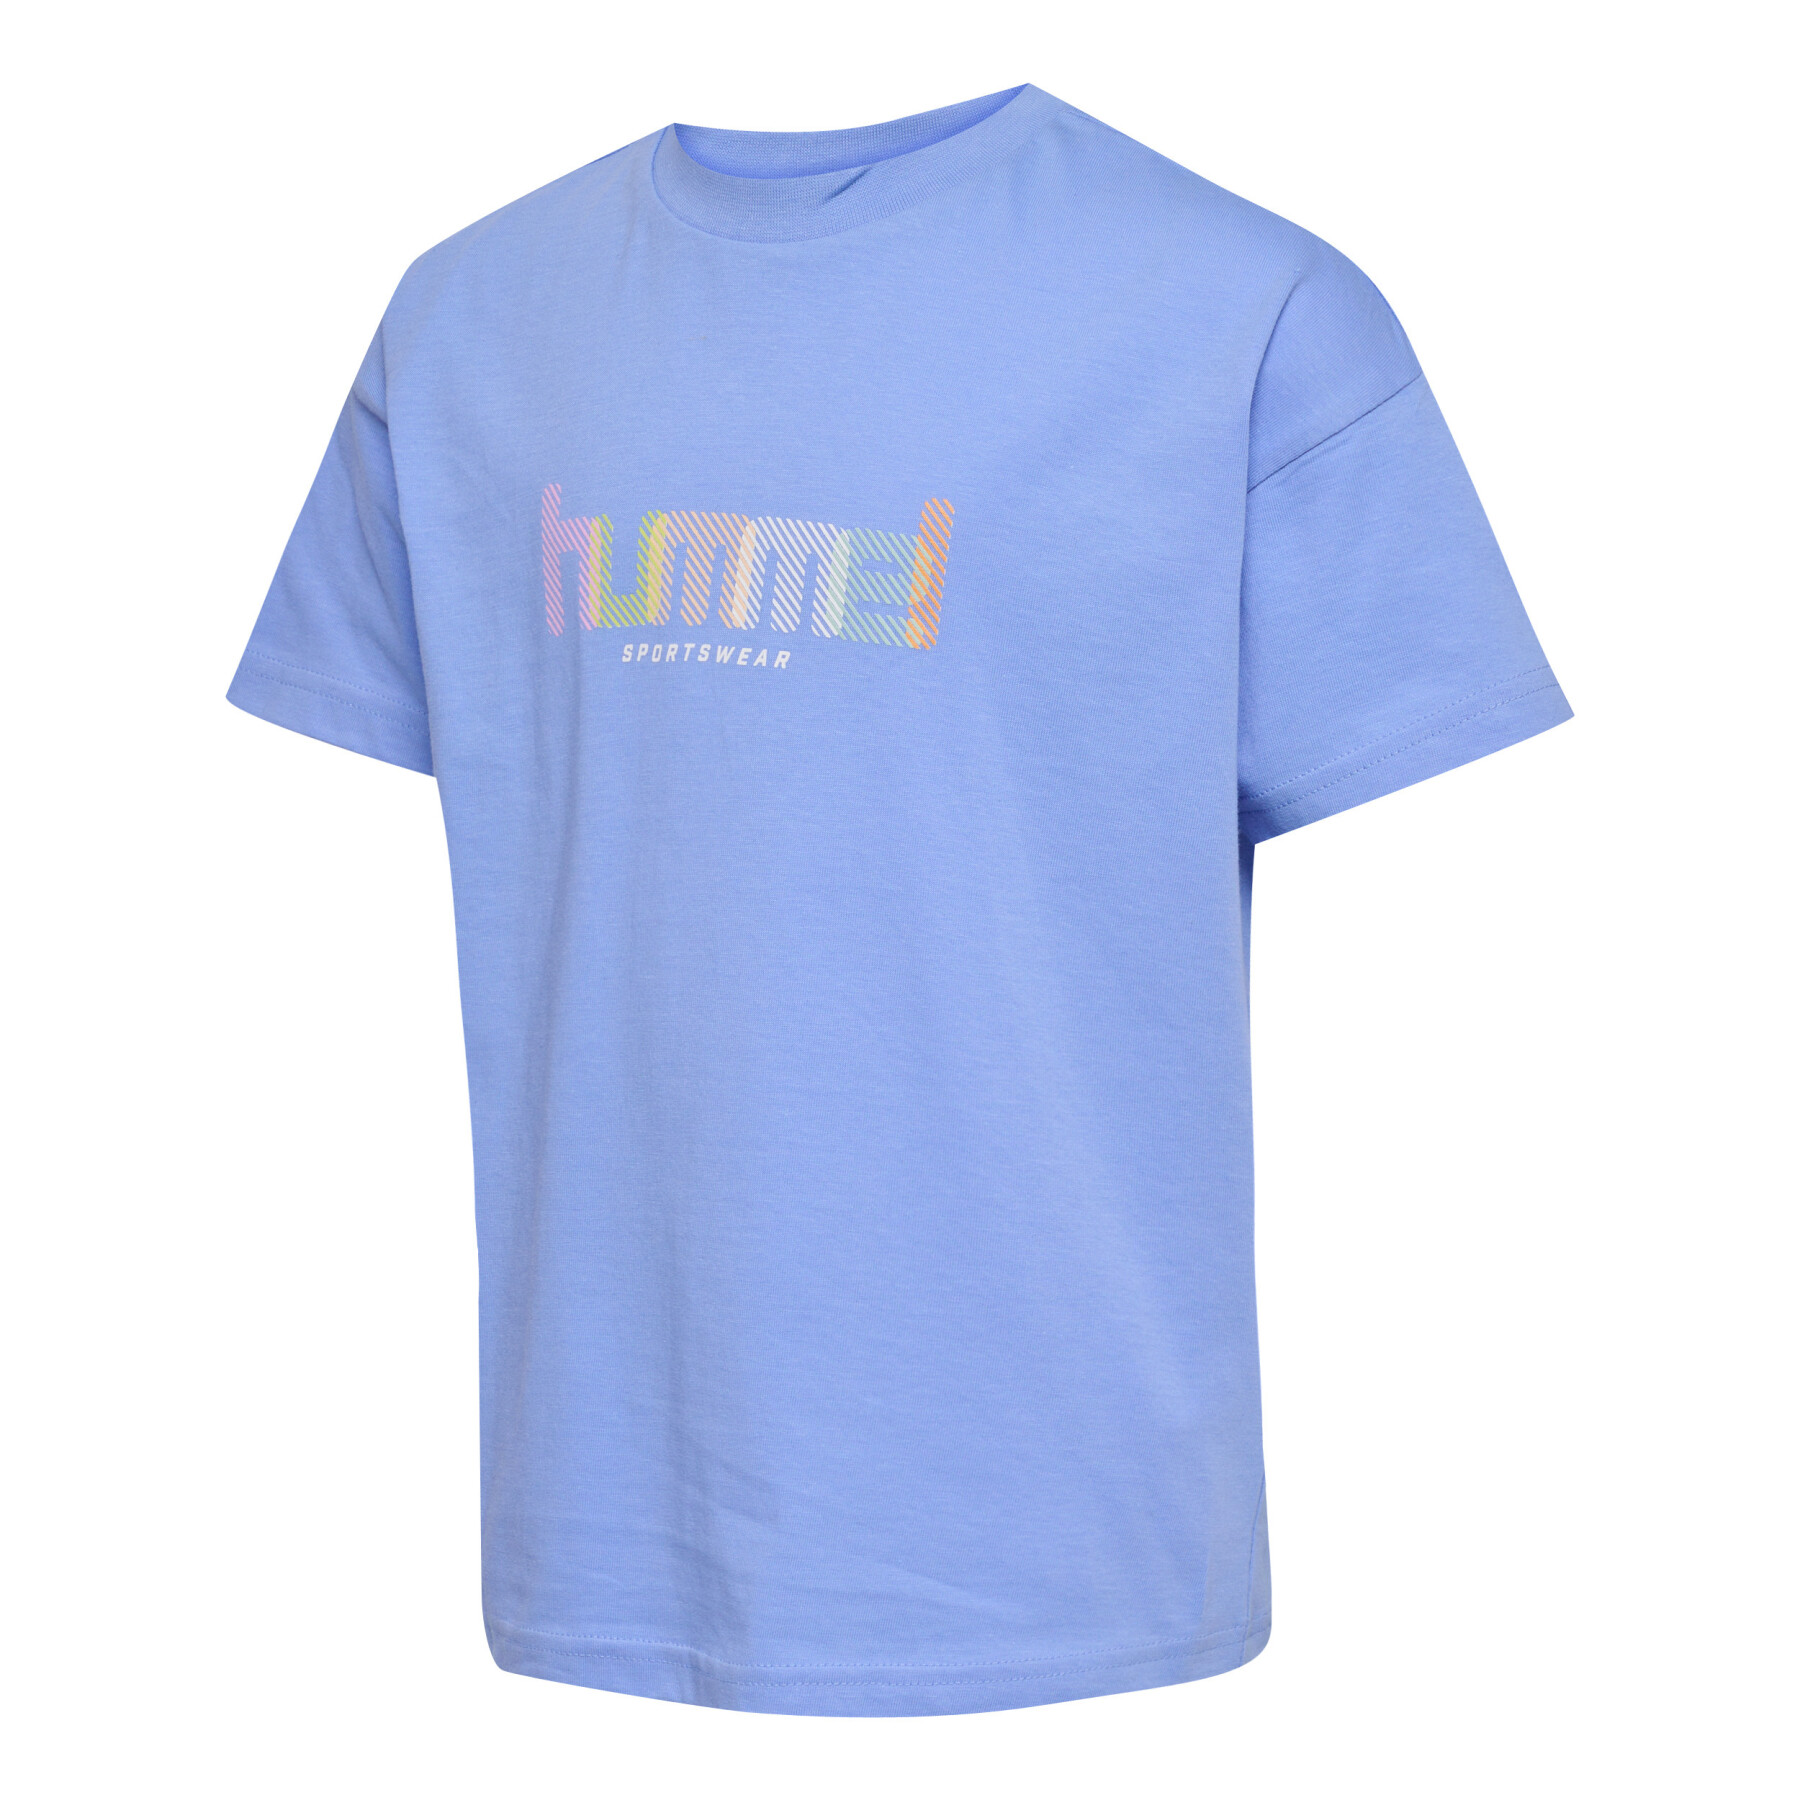 T-shirt de rapariga Hummel Agnes